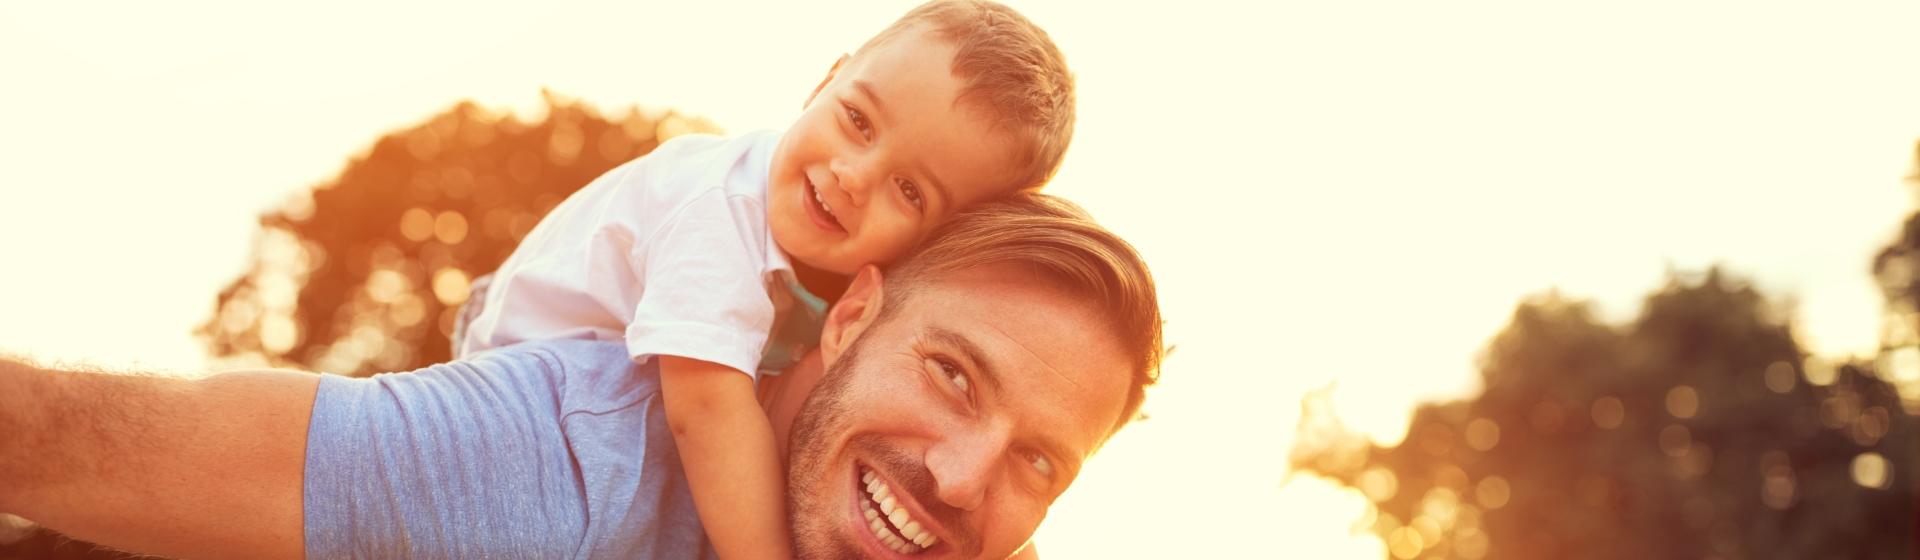 Un homme et son fils souriants et sereins face aux accidents de la vie